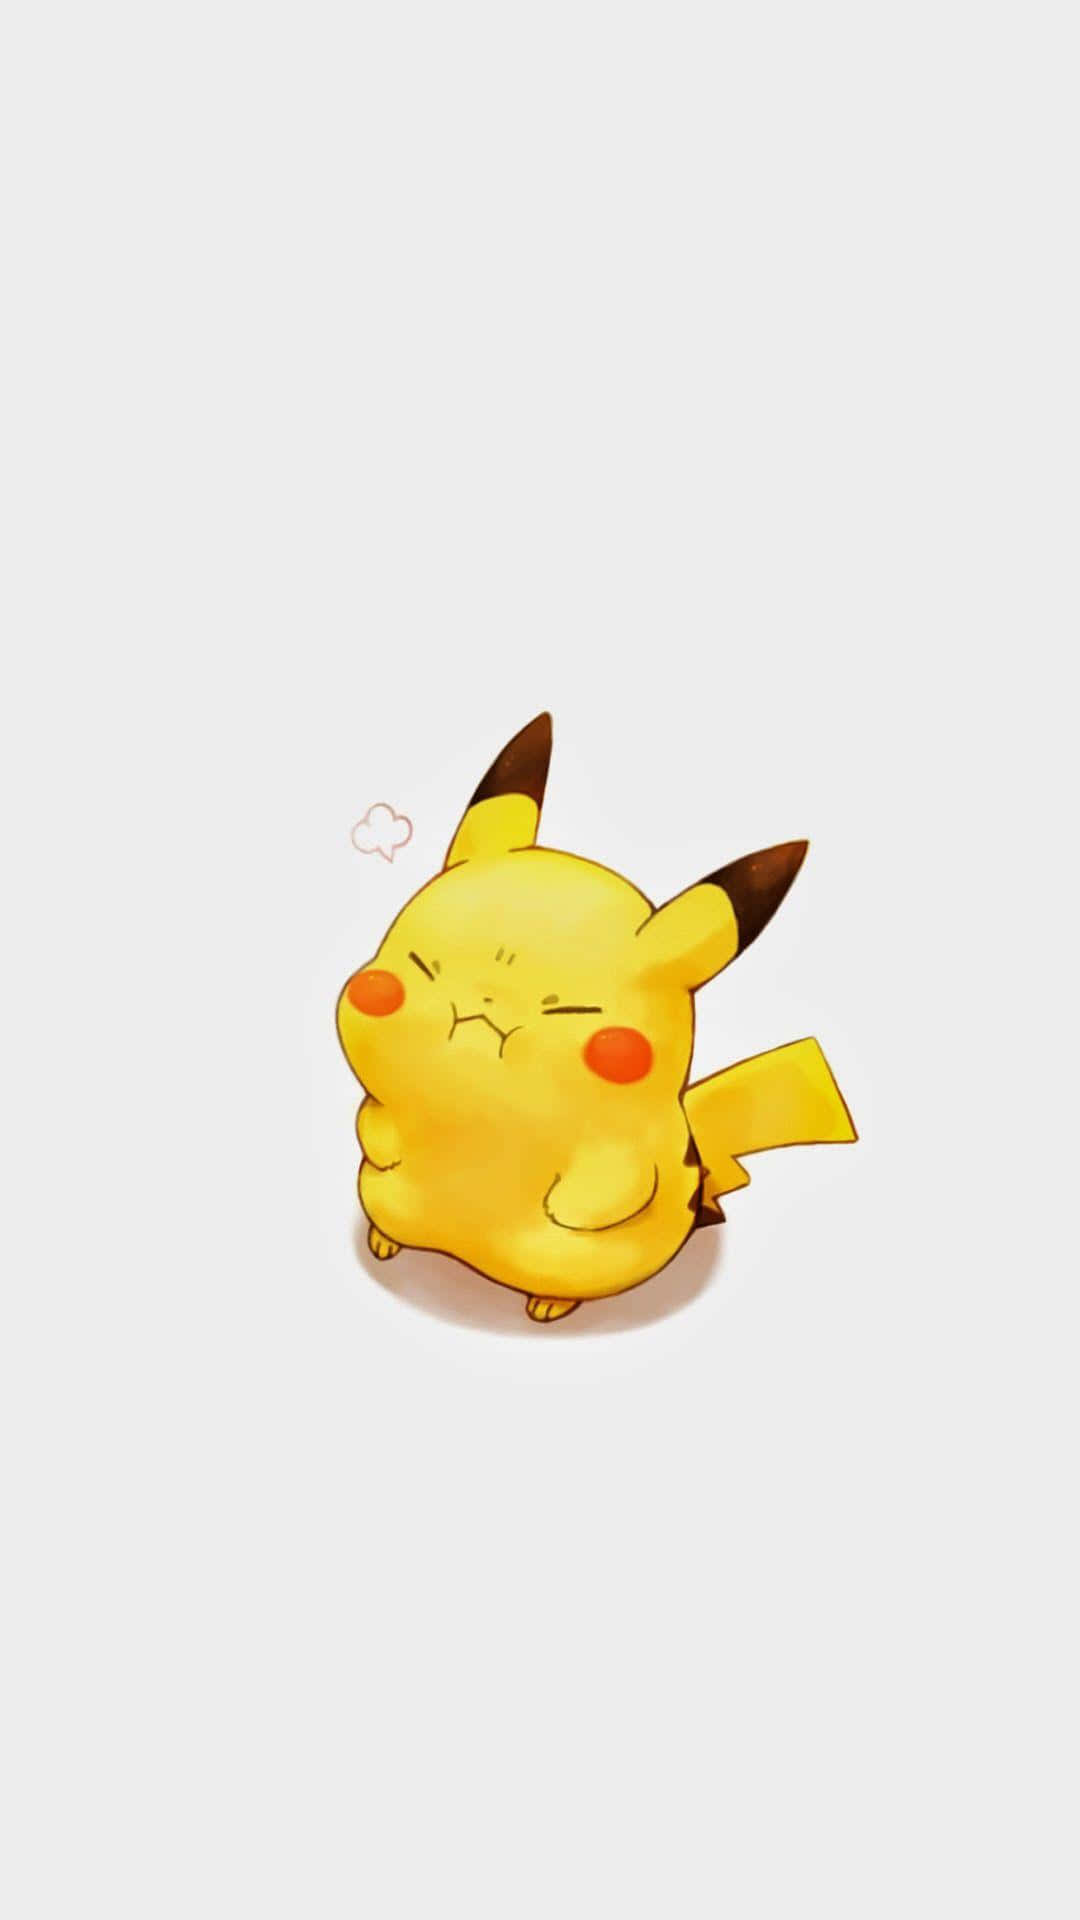 Sweet Dreams, Little Pikachu Wallpaper